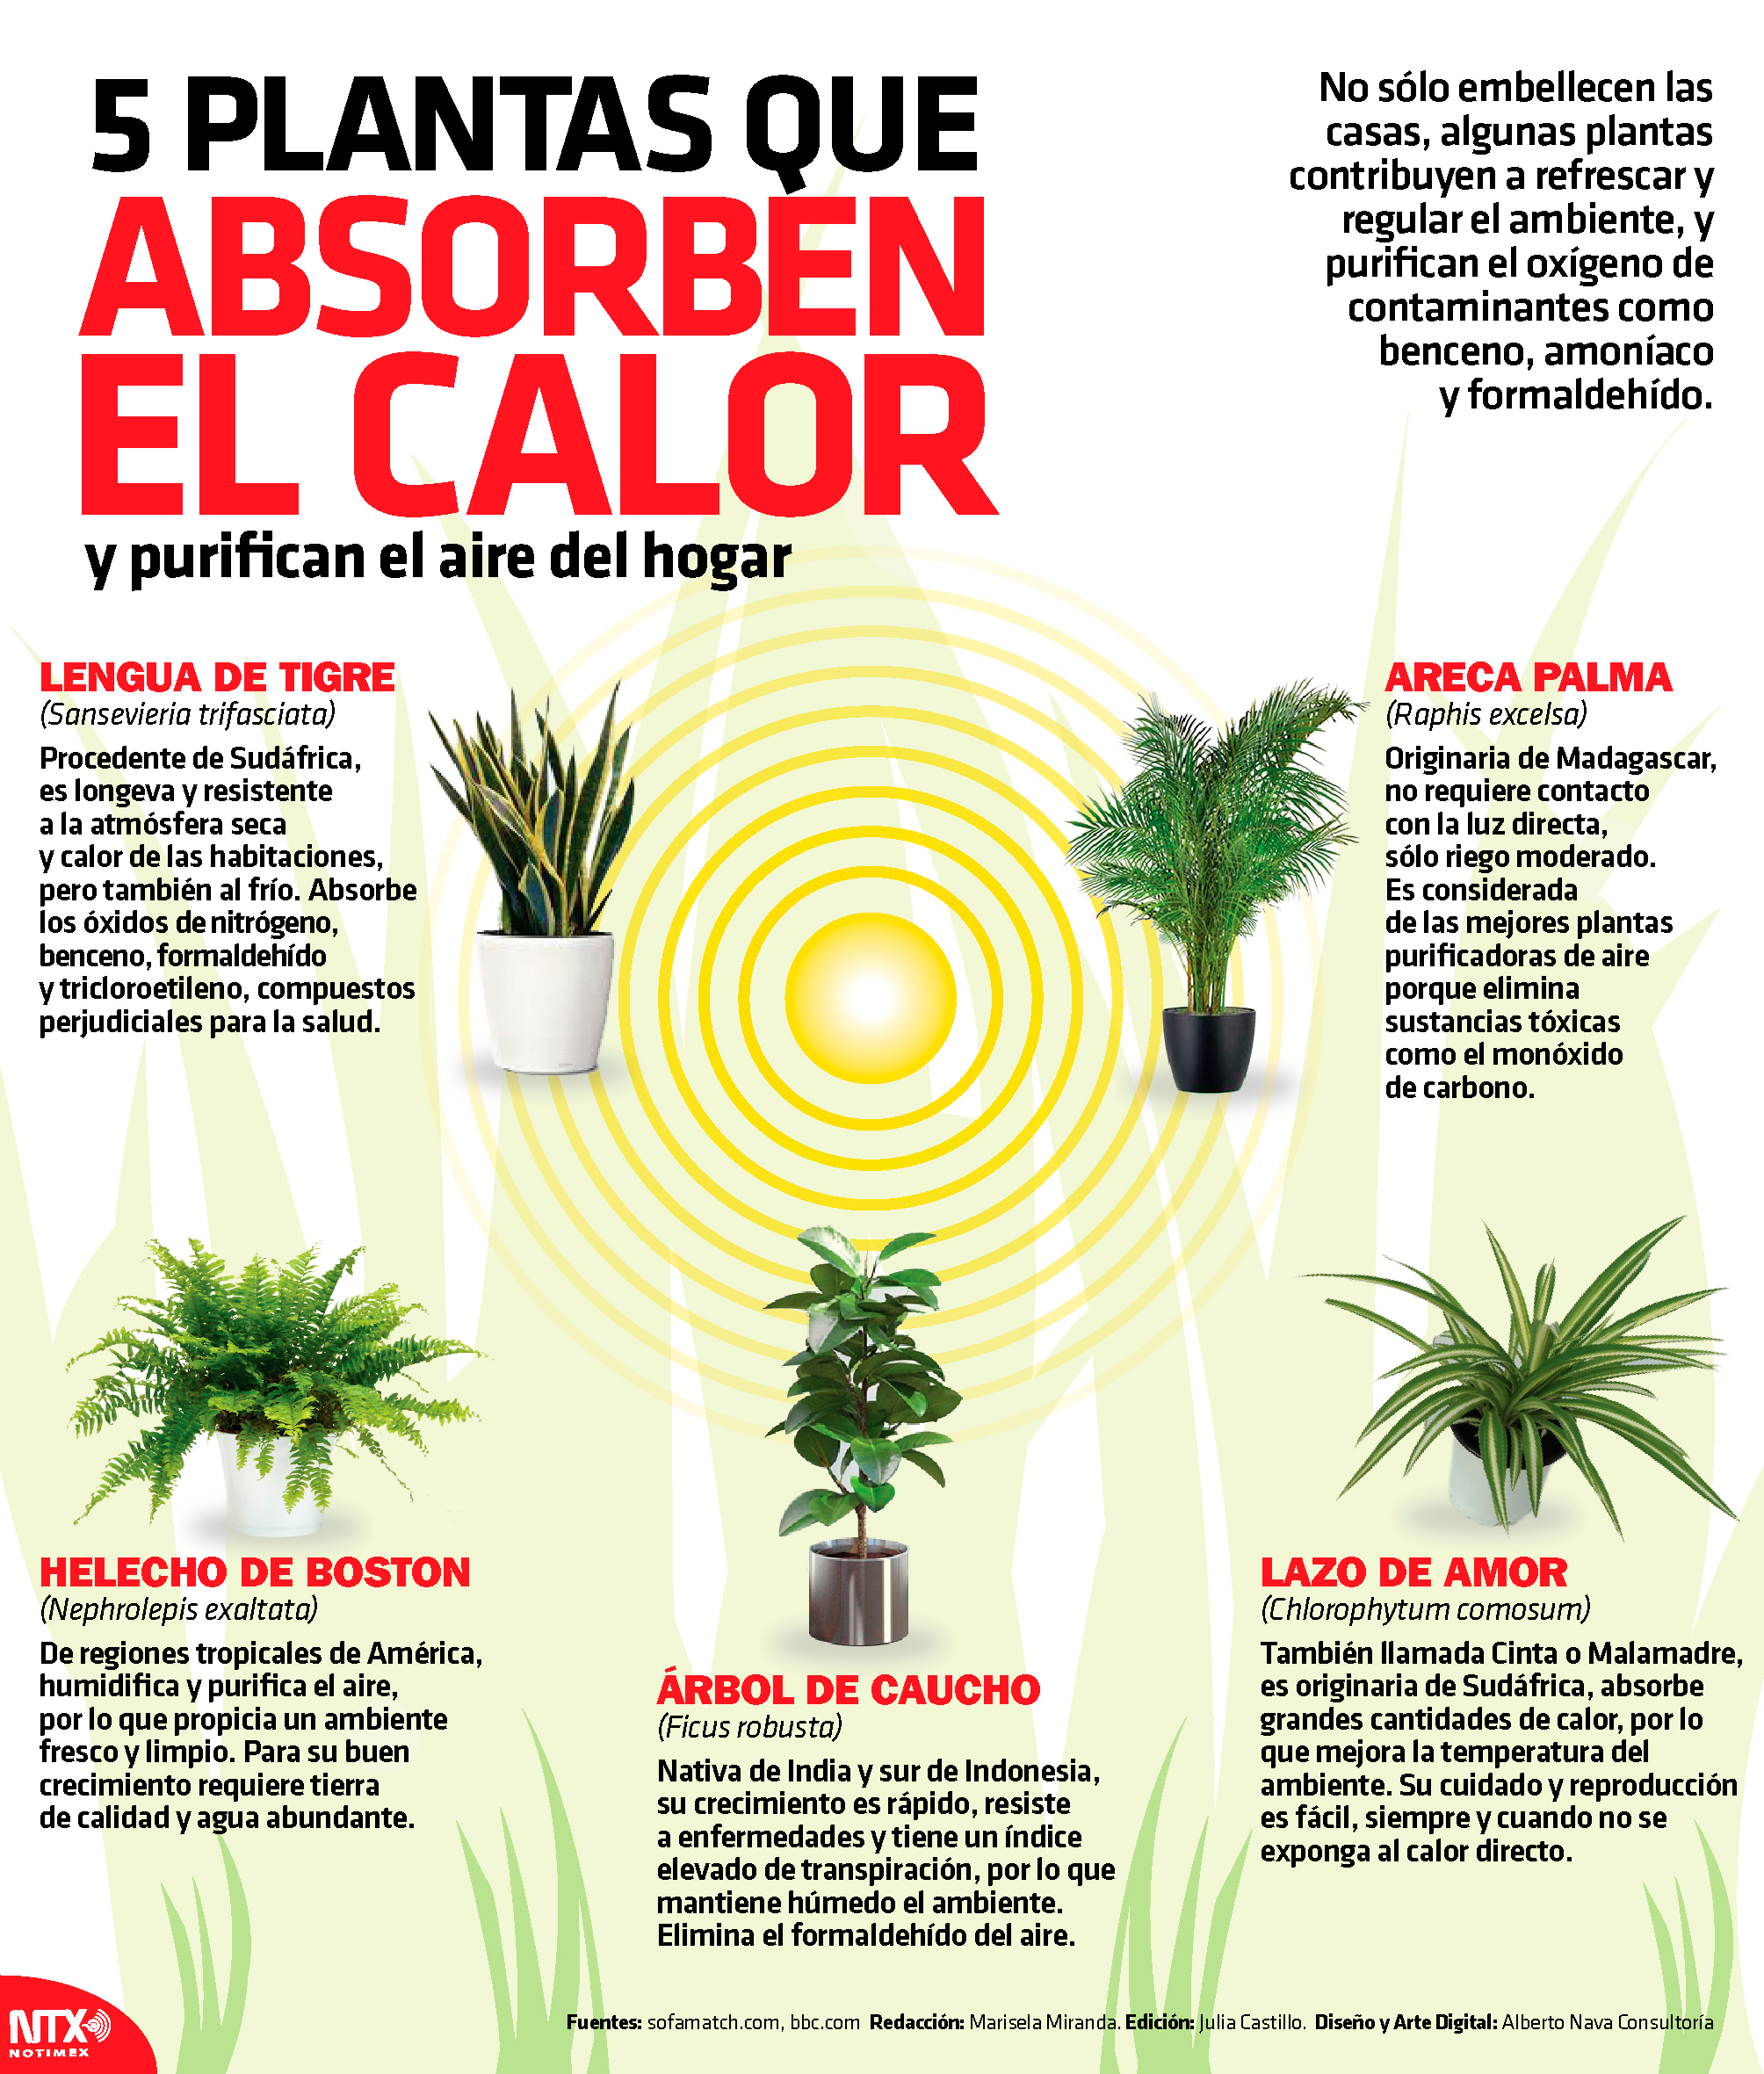 5 plantas que absorben el calor